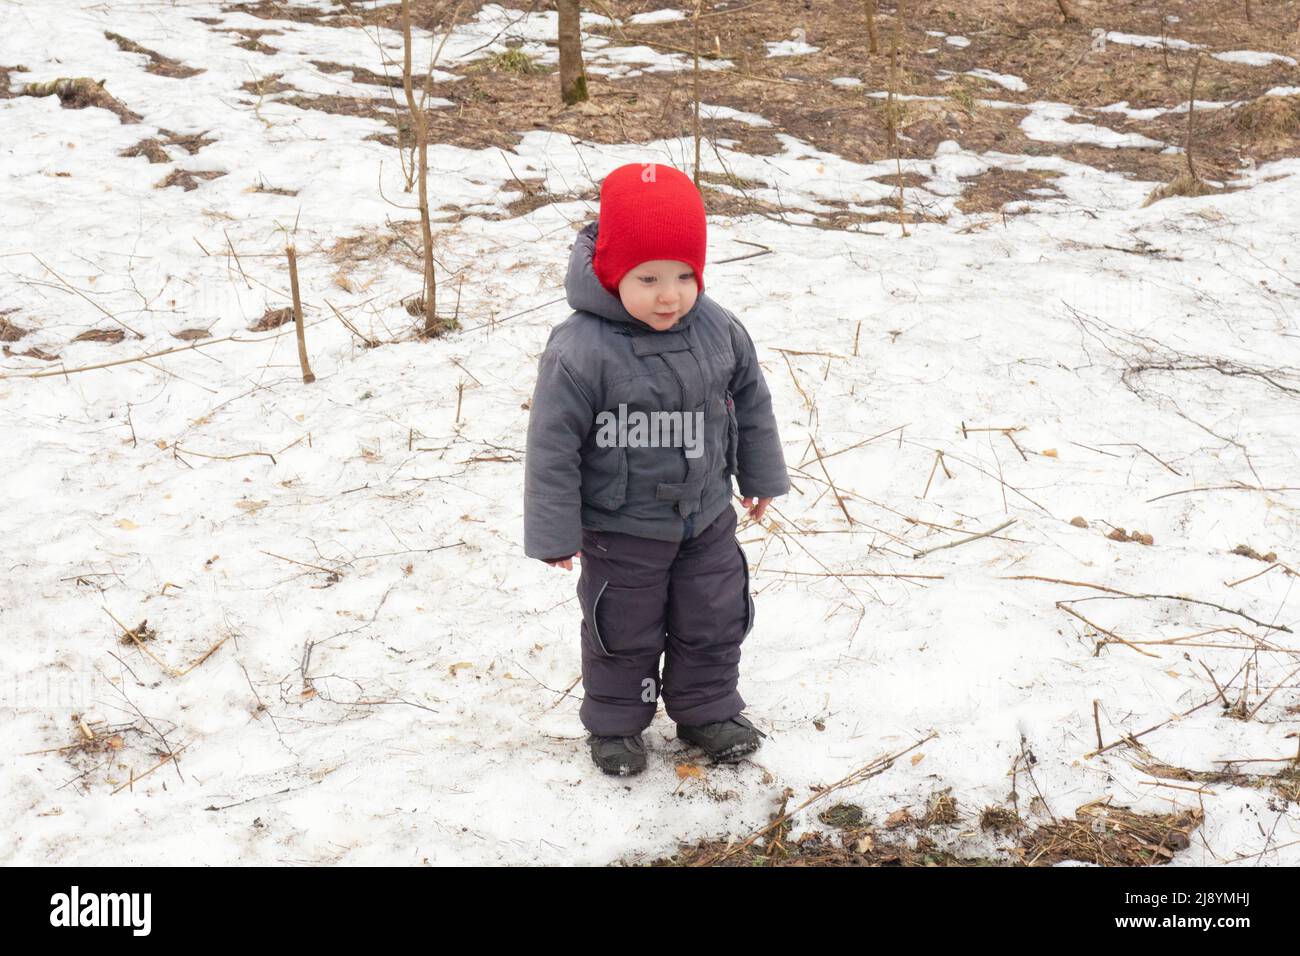 Kleines Kind in roter Mütze und grauer Kleidung, das im Frühlingswald aufsteht Stockfoto